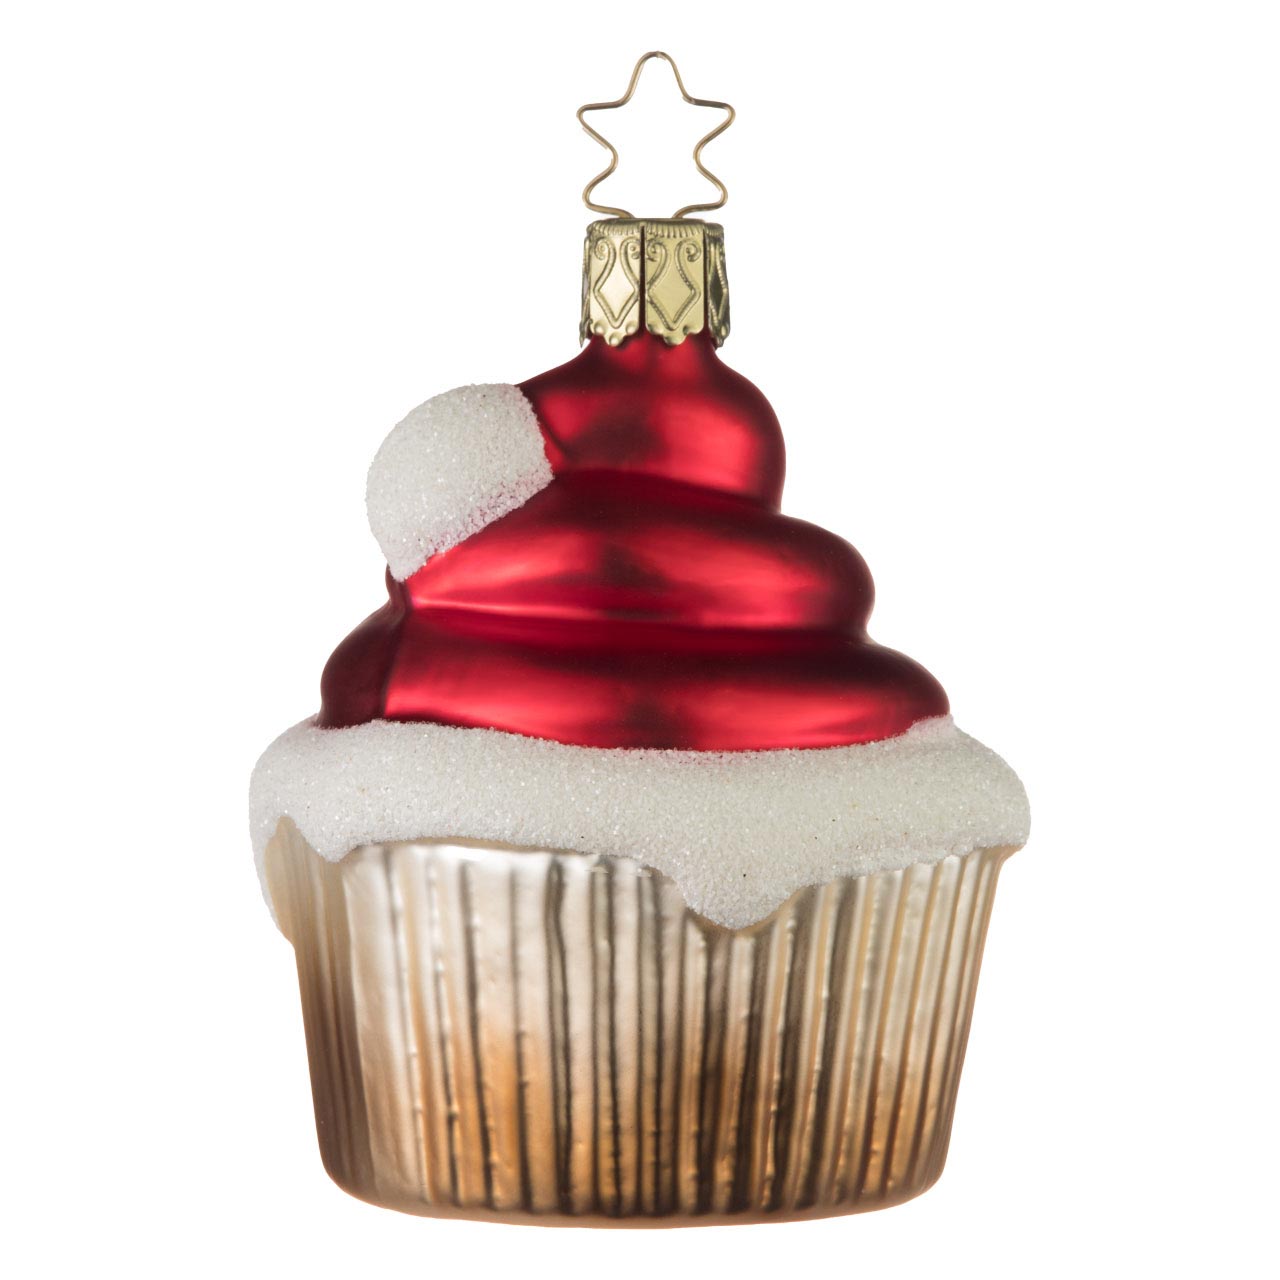 Cupcake Santa's pointed cap